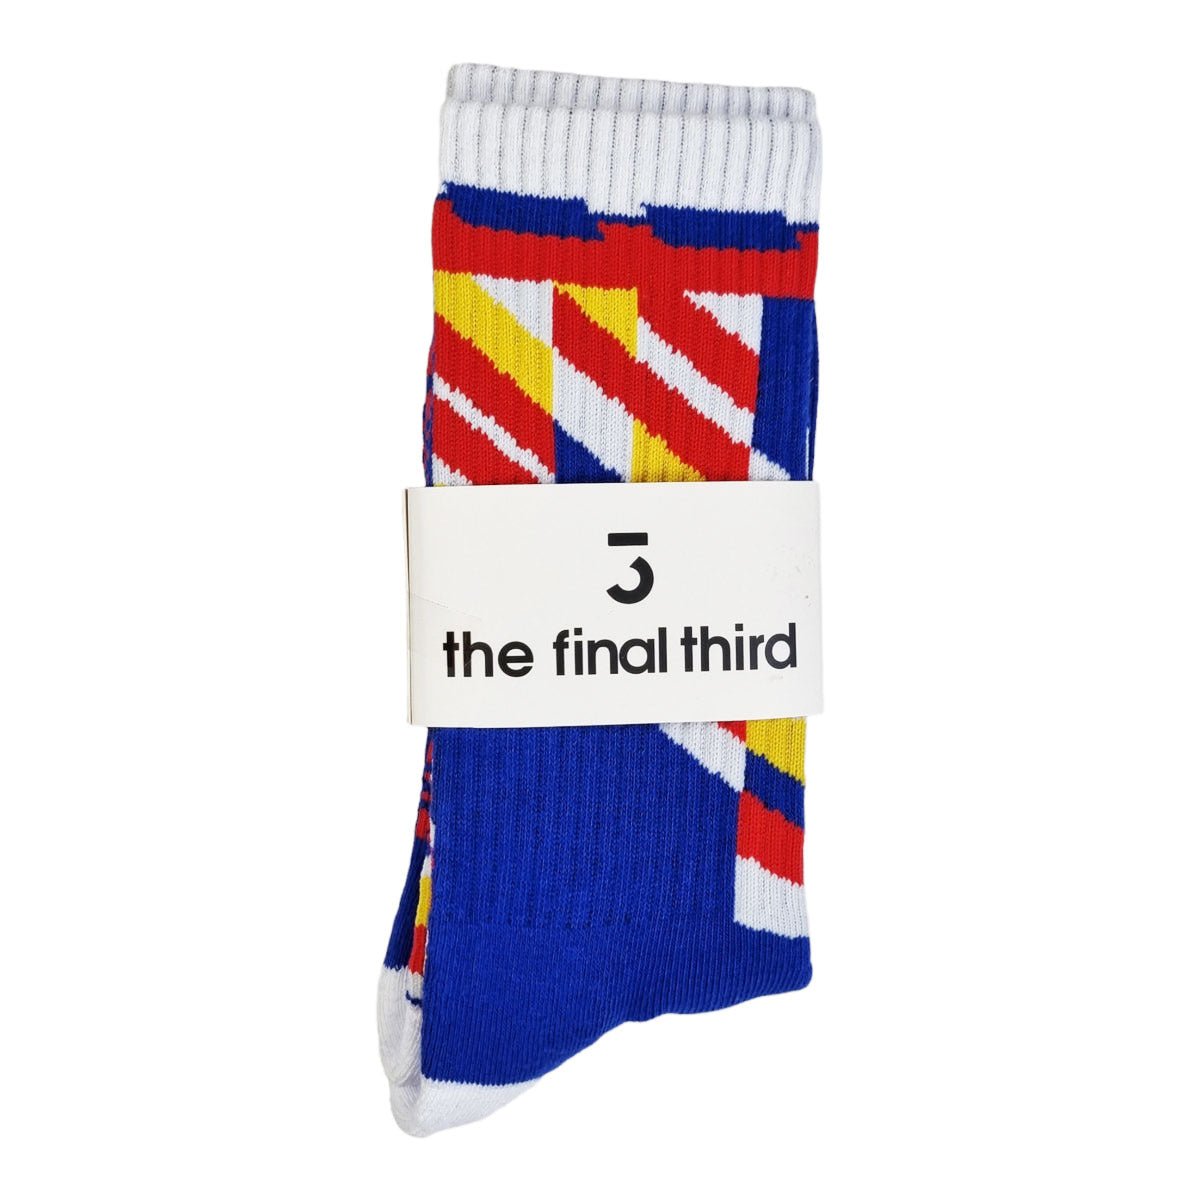 South Korea 94 (Home) Socks (Size 6-12) - Football Finery - FF202956